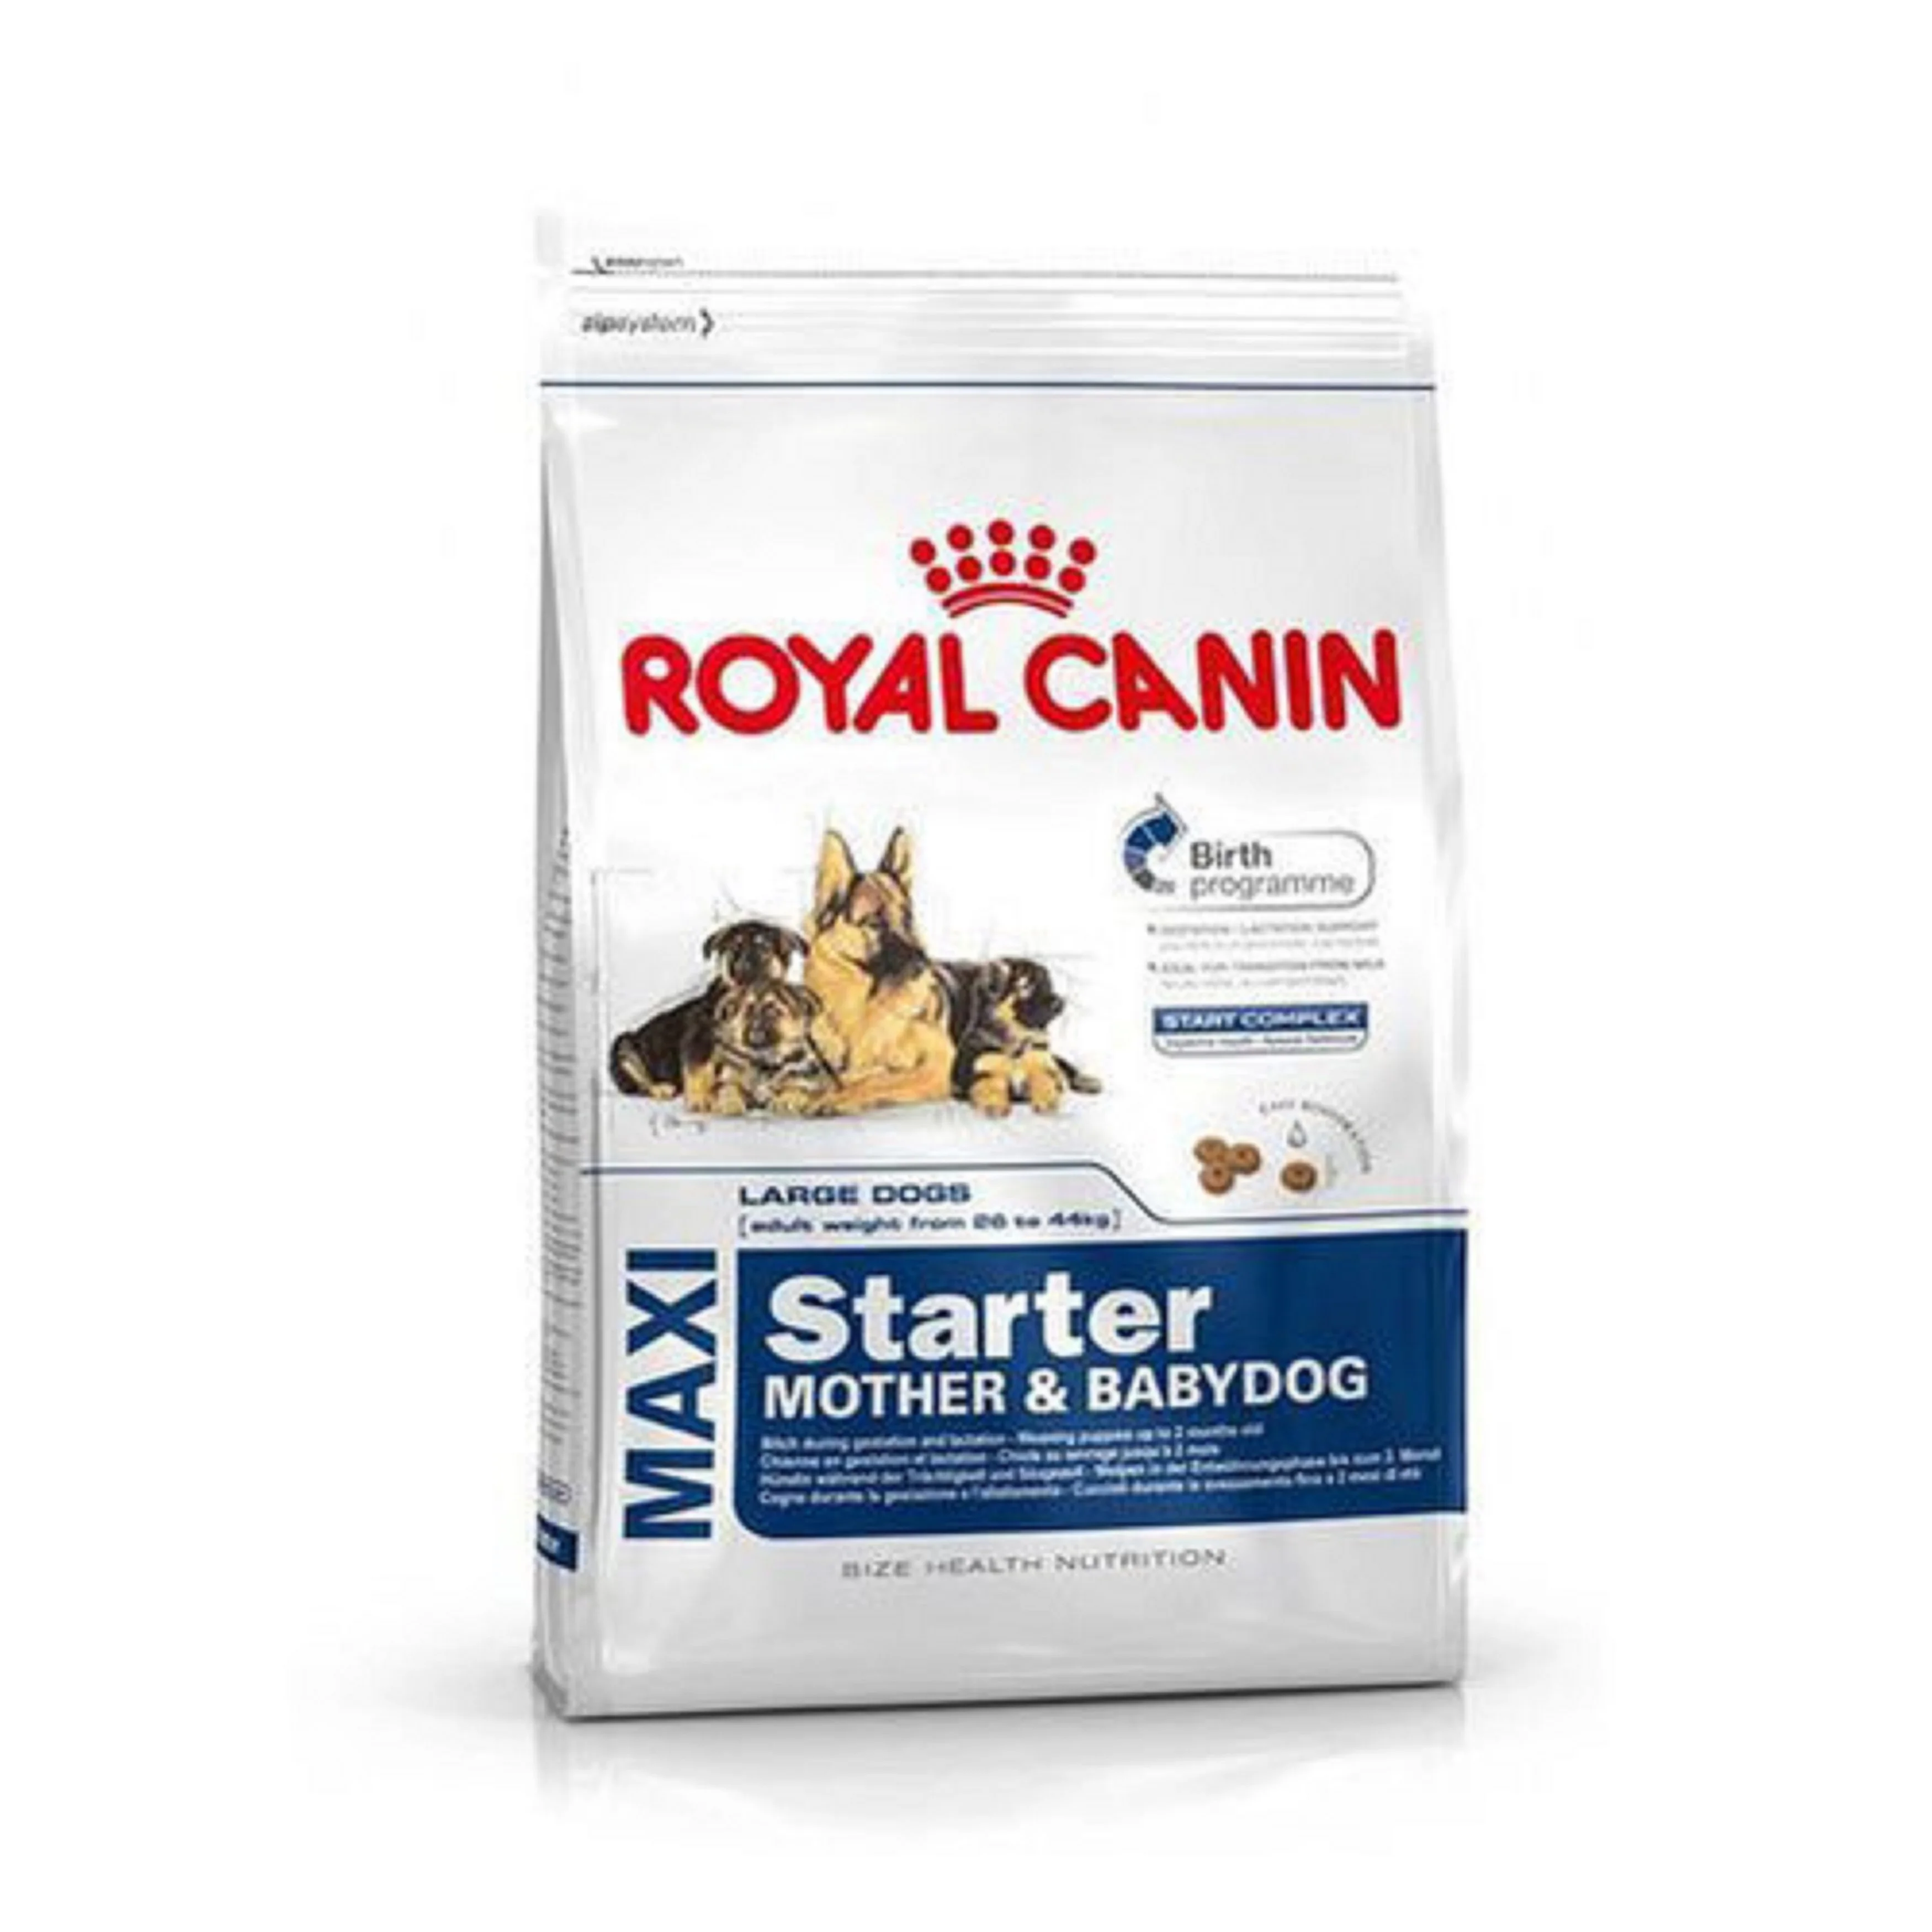 Royal Canin персидский 30 сухой корм для кошек/Royal Canin мини взрослых Электрический сухой собачьей еды